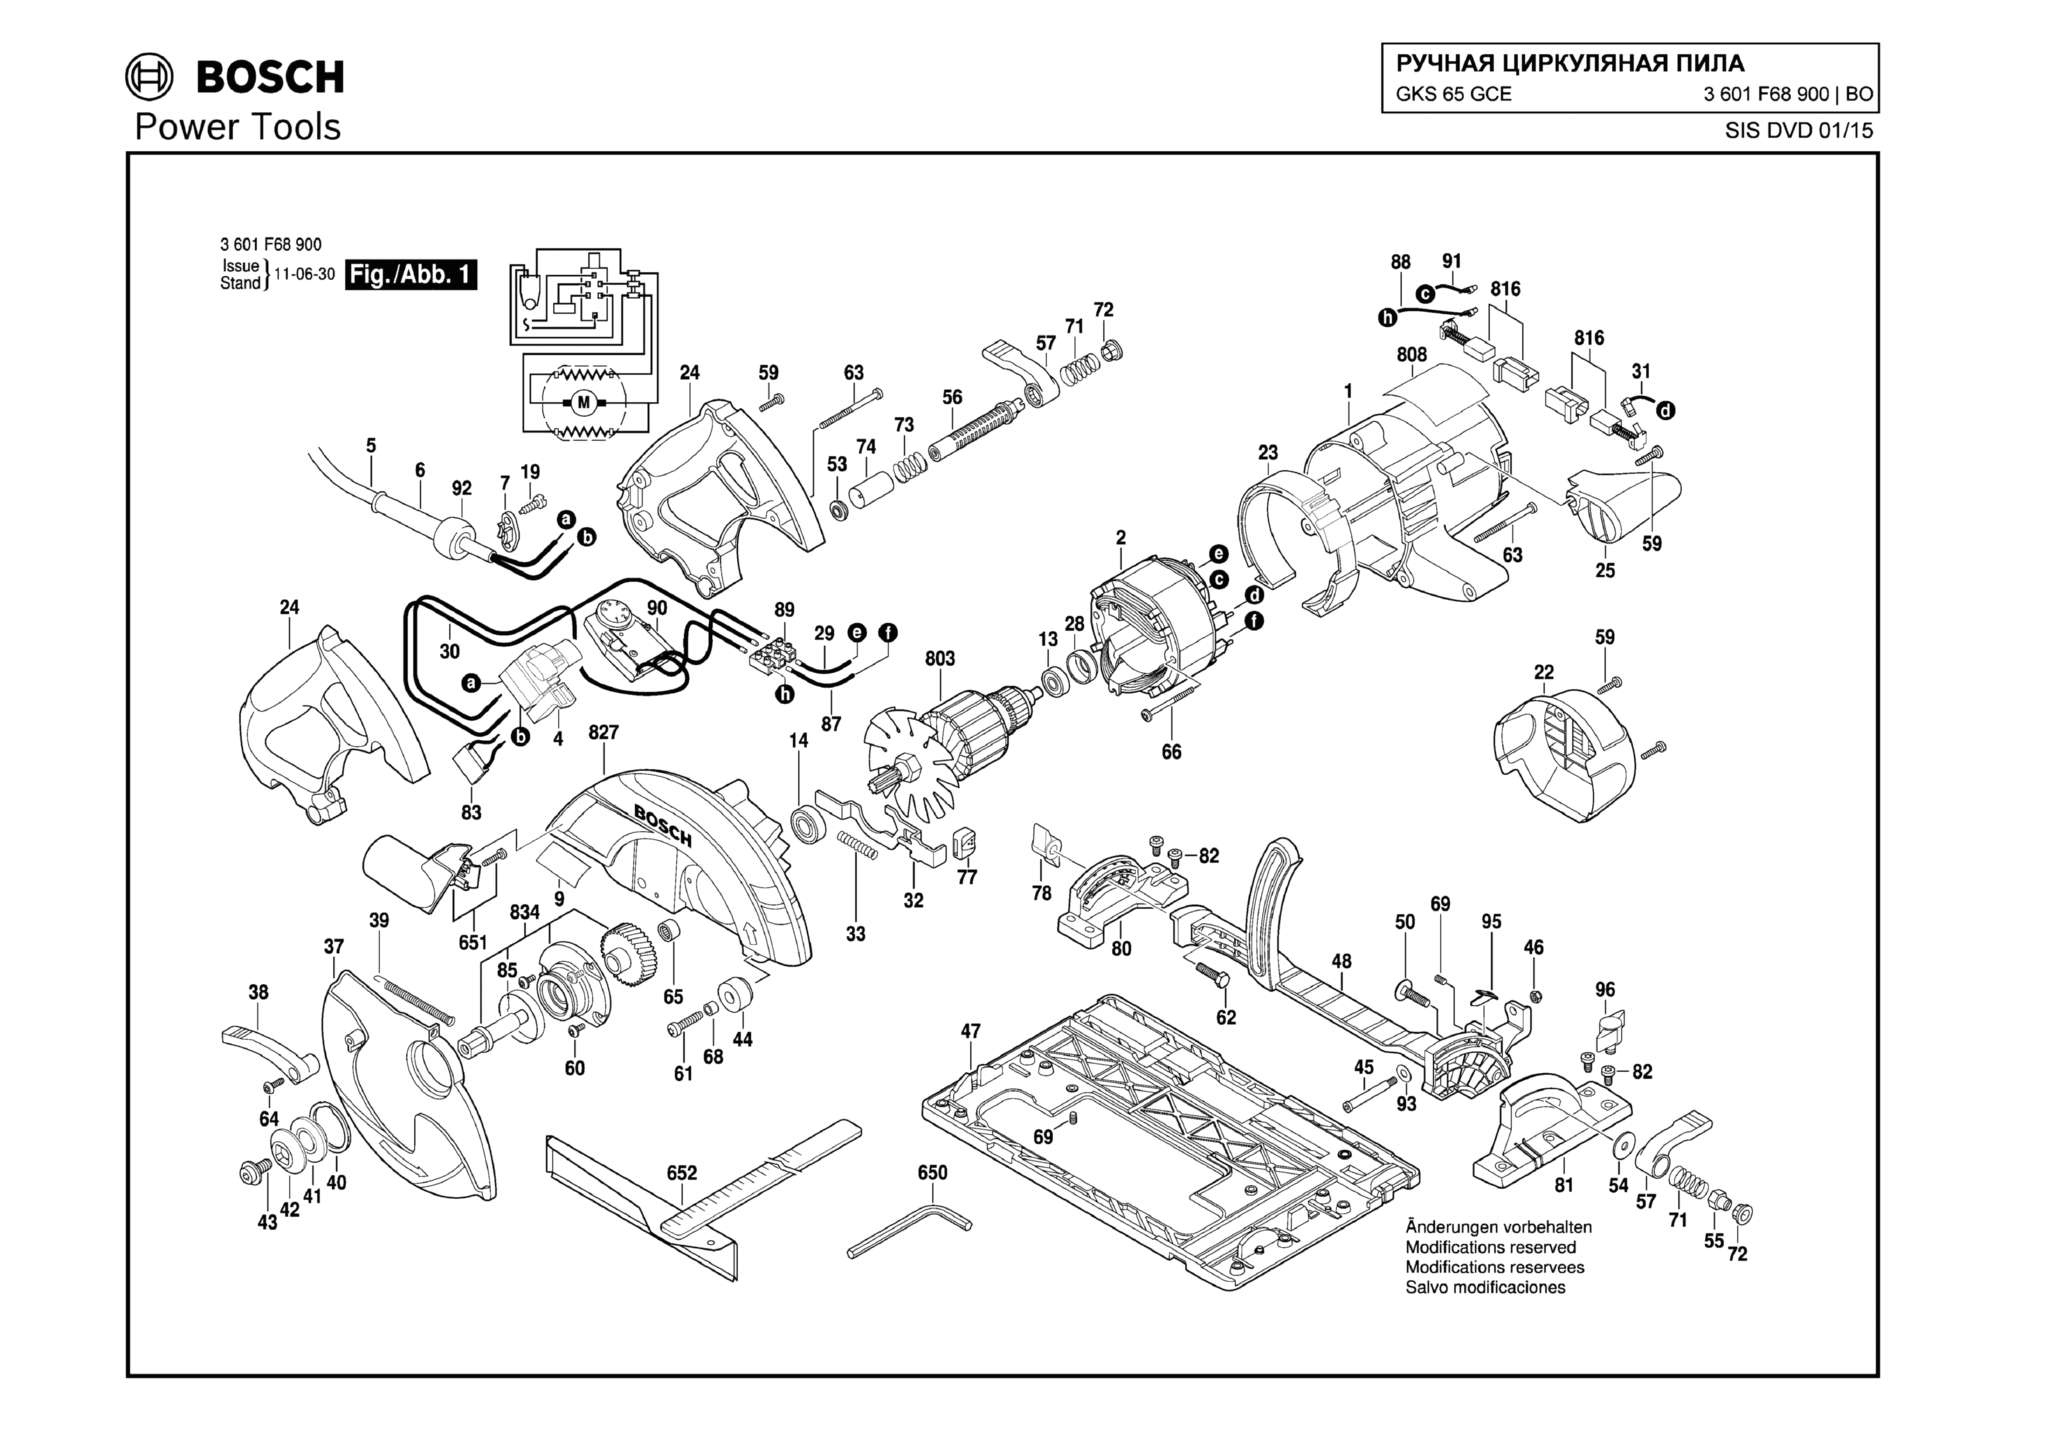 Запчасти, схема и деталировка Bosch GKS 65 GCE (ТИП 3601F68900)